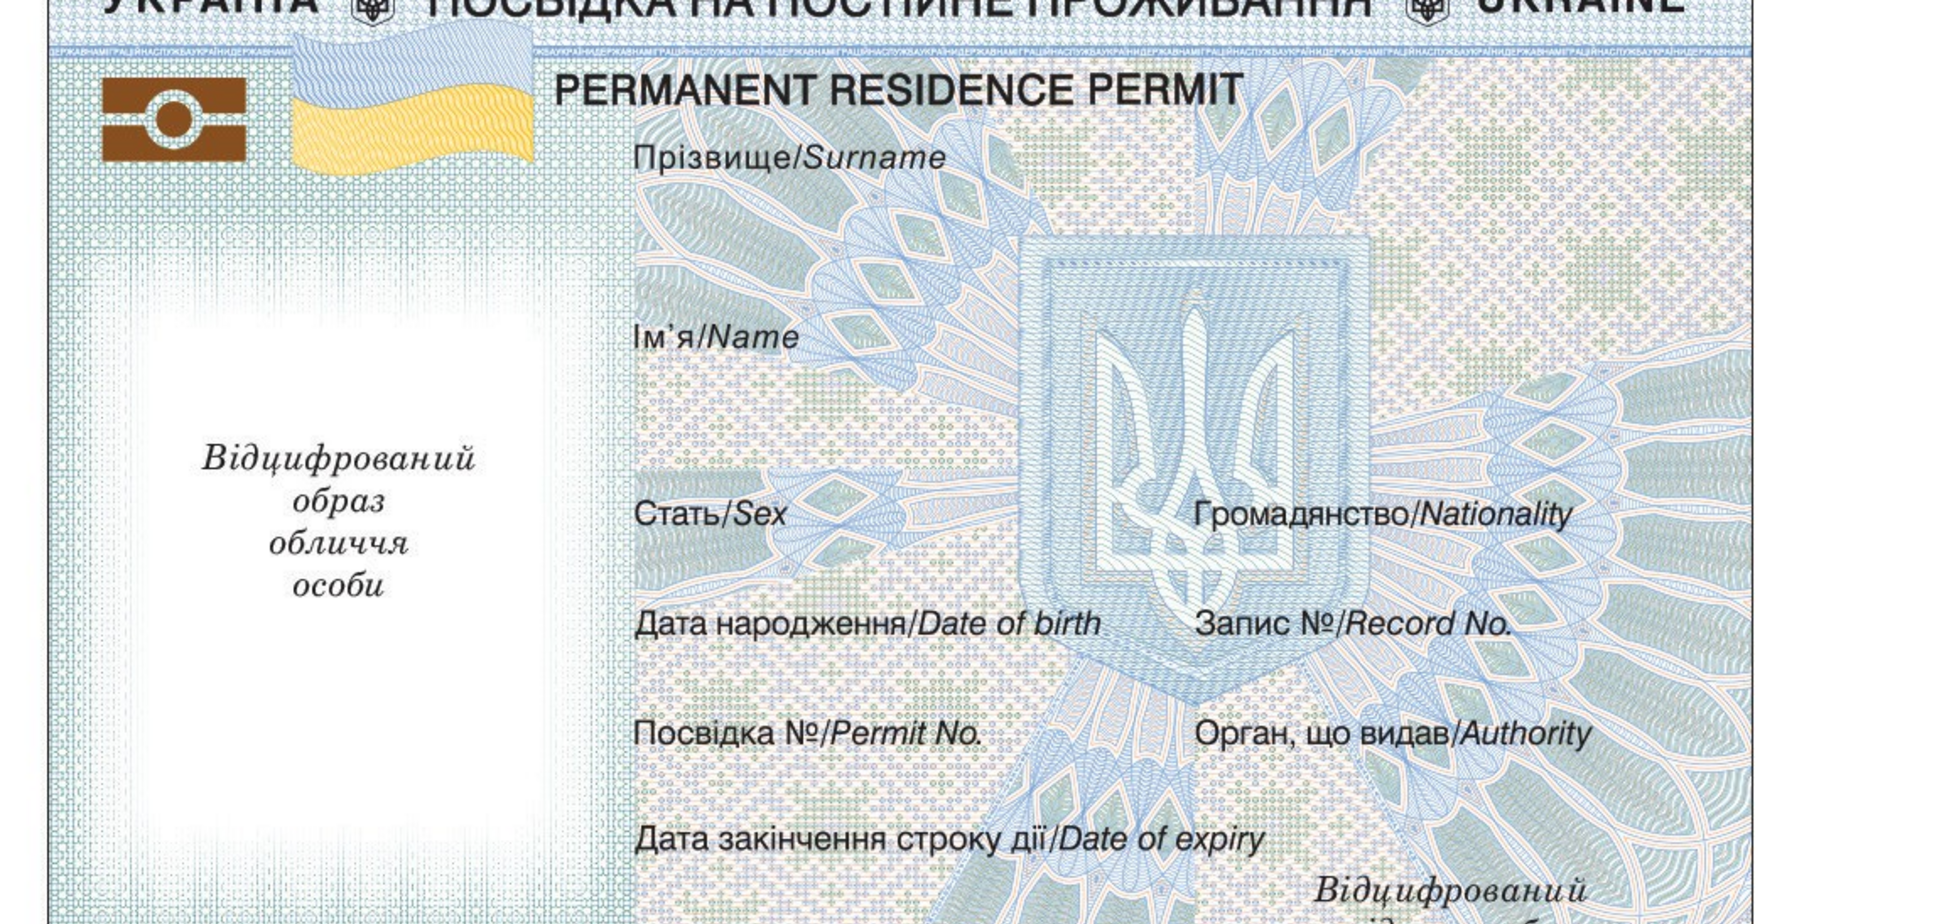 Вид на жительство в Украине будет в форме ID-карты